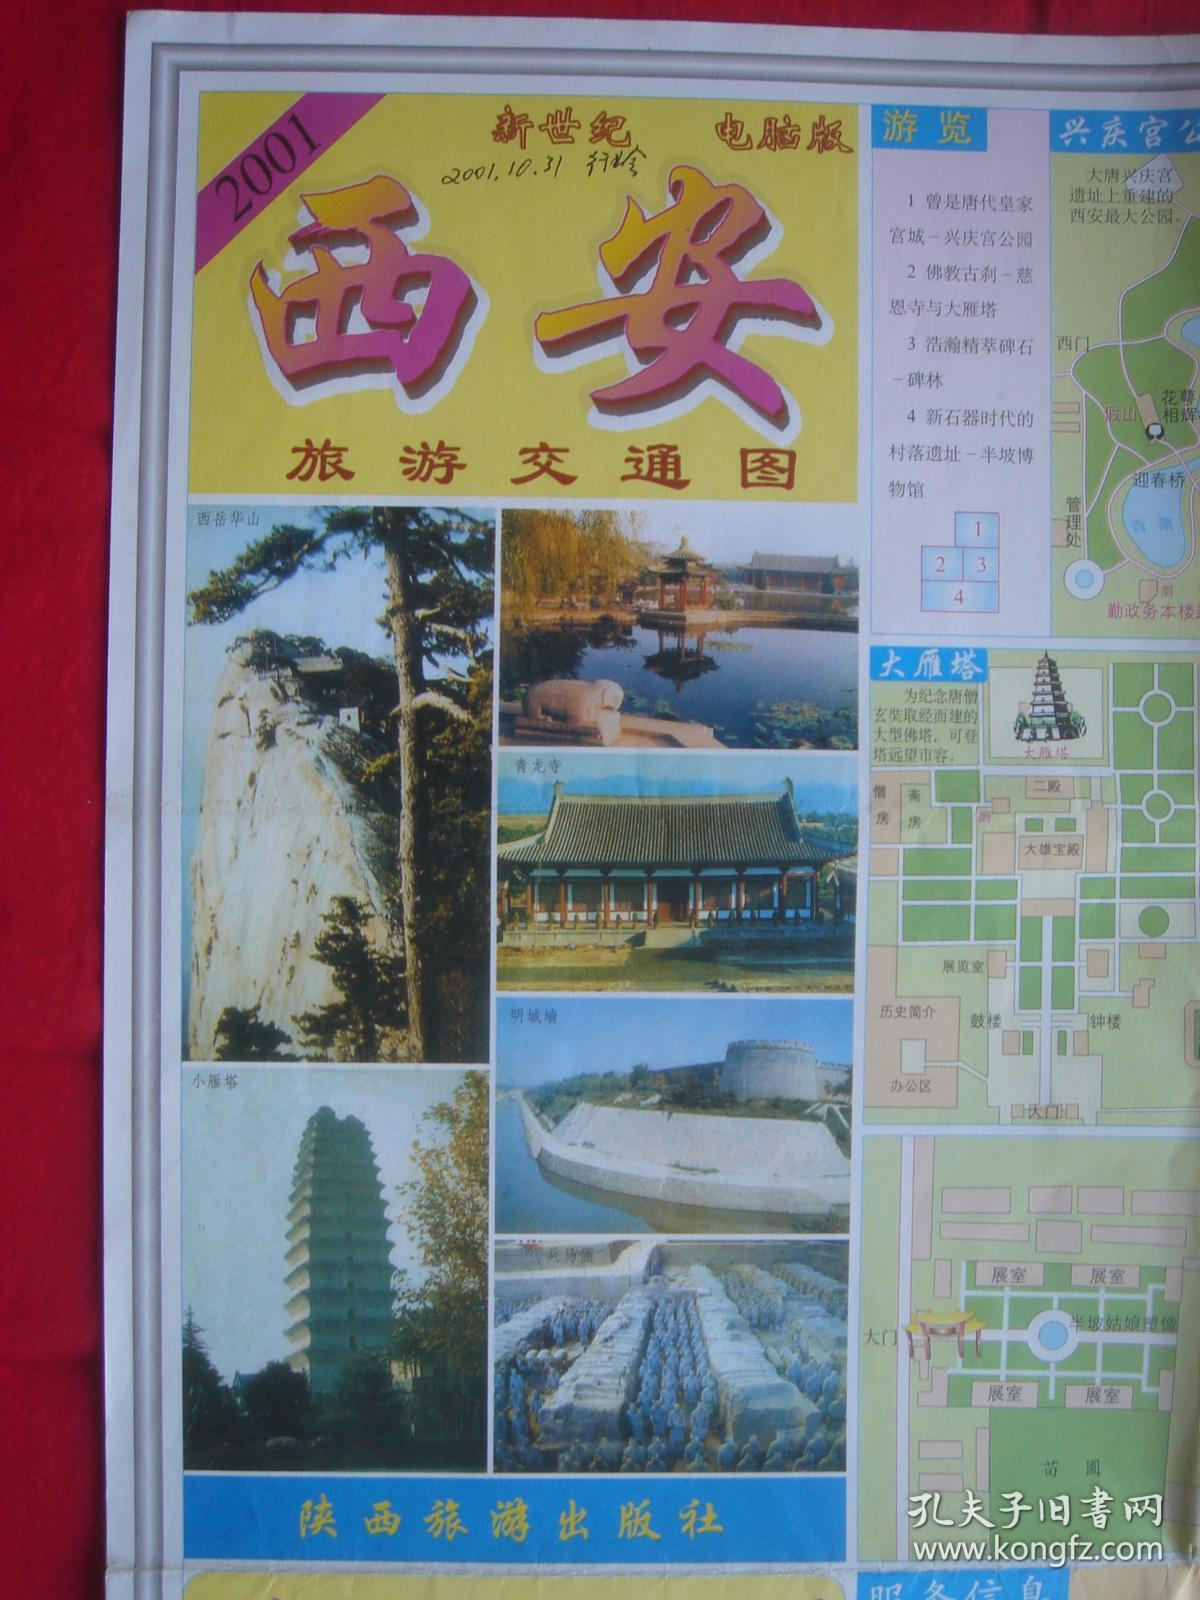 【旧地图】西安旅游交通图 2开 2001年5月1版